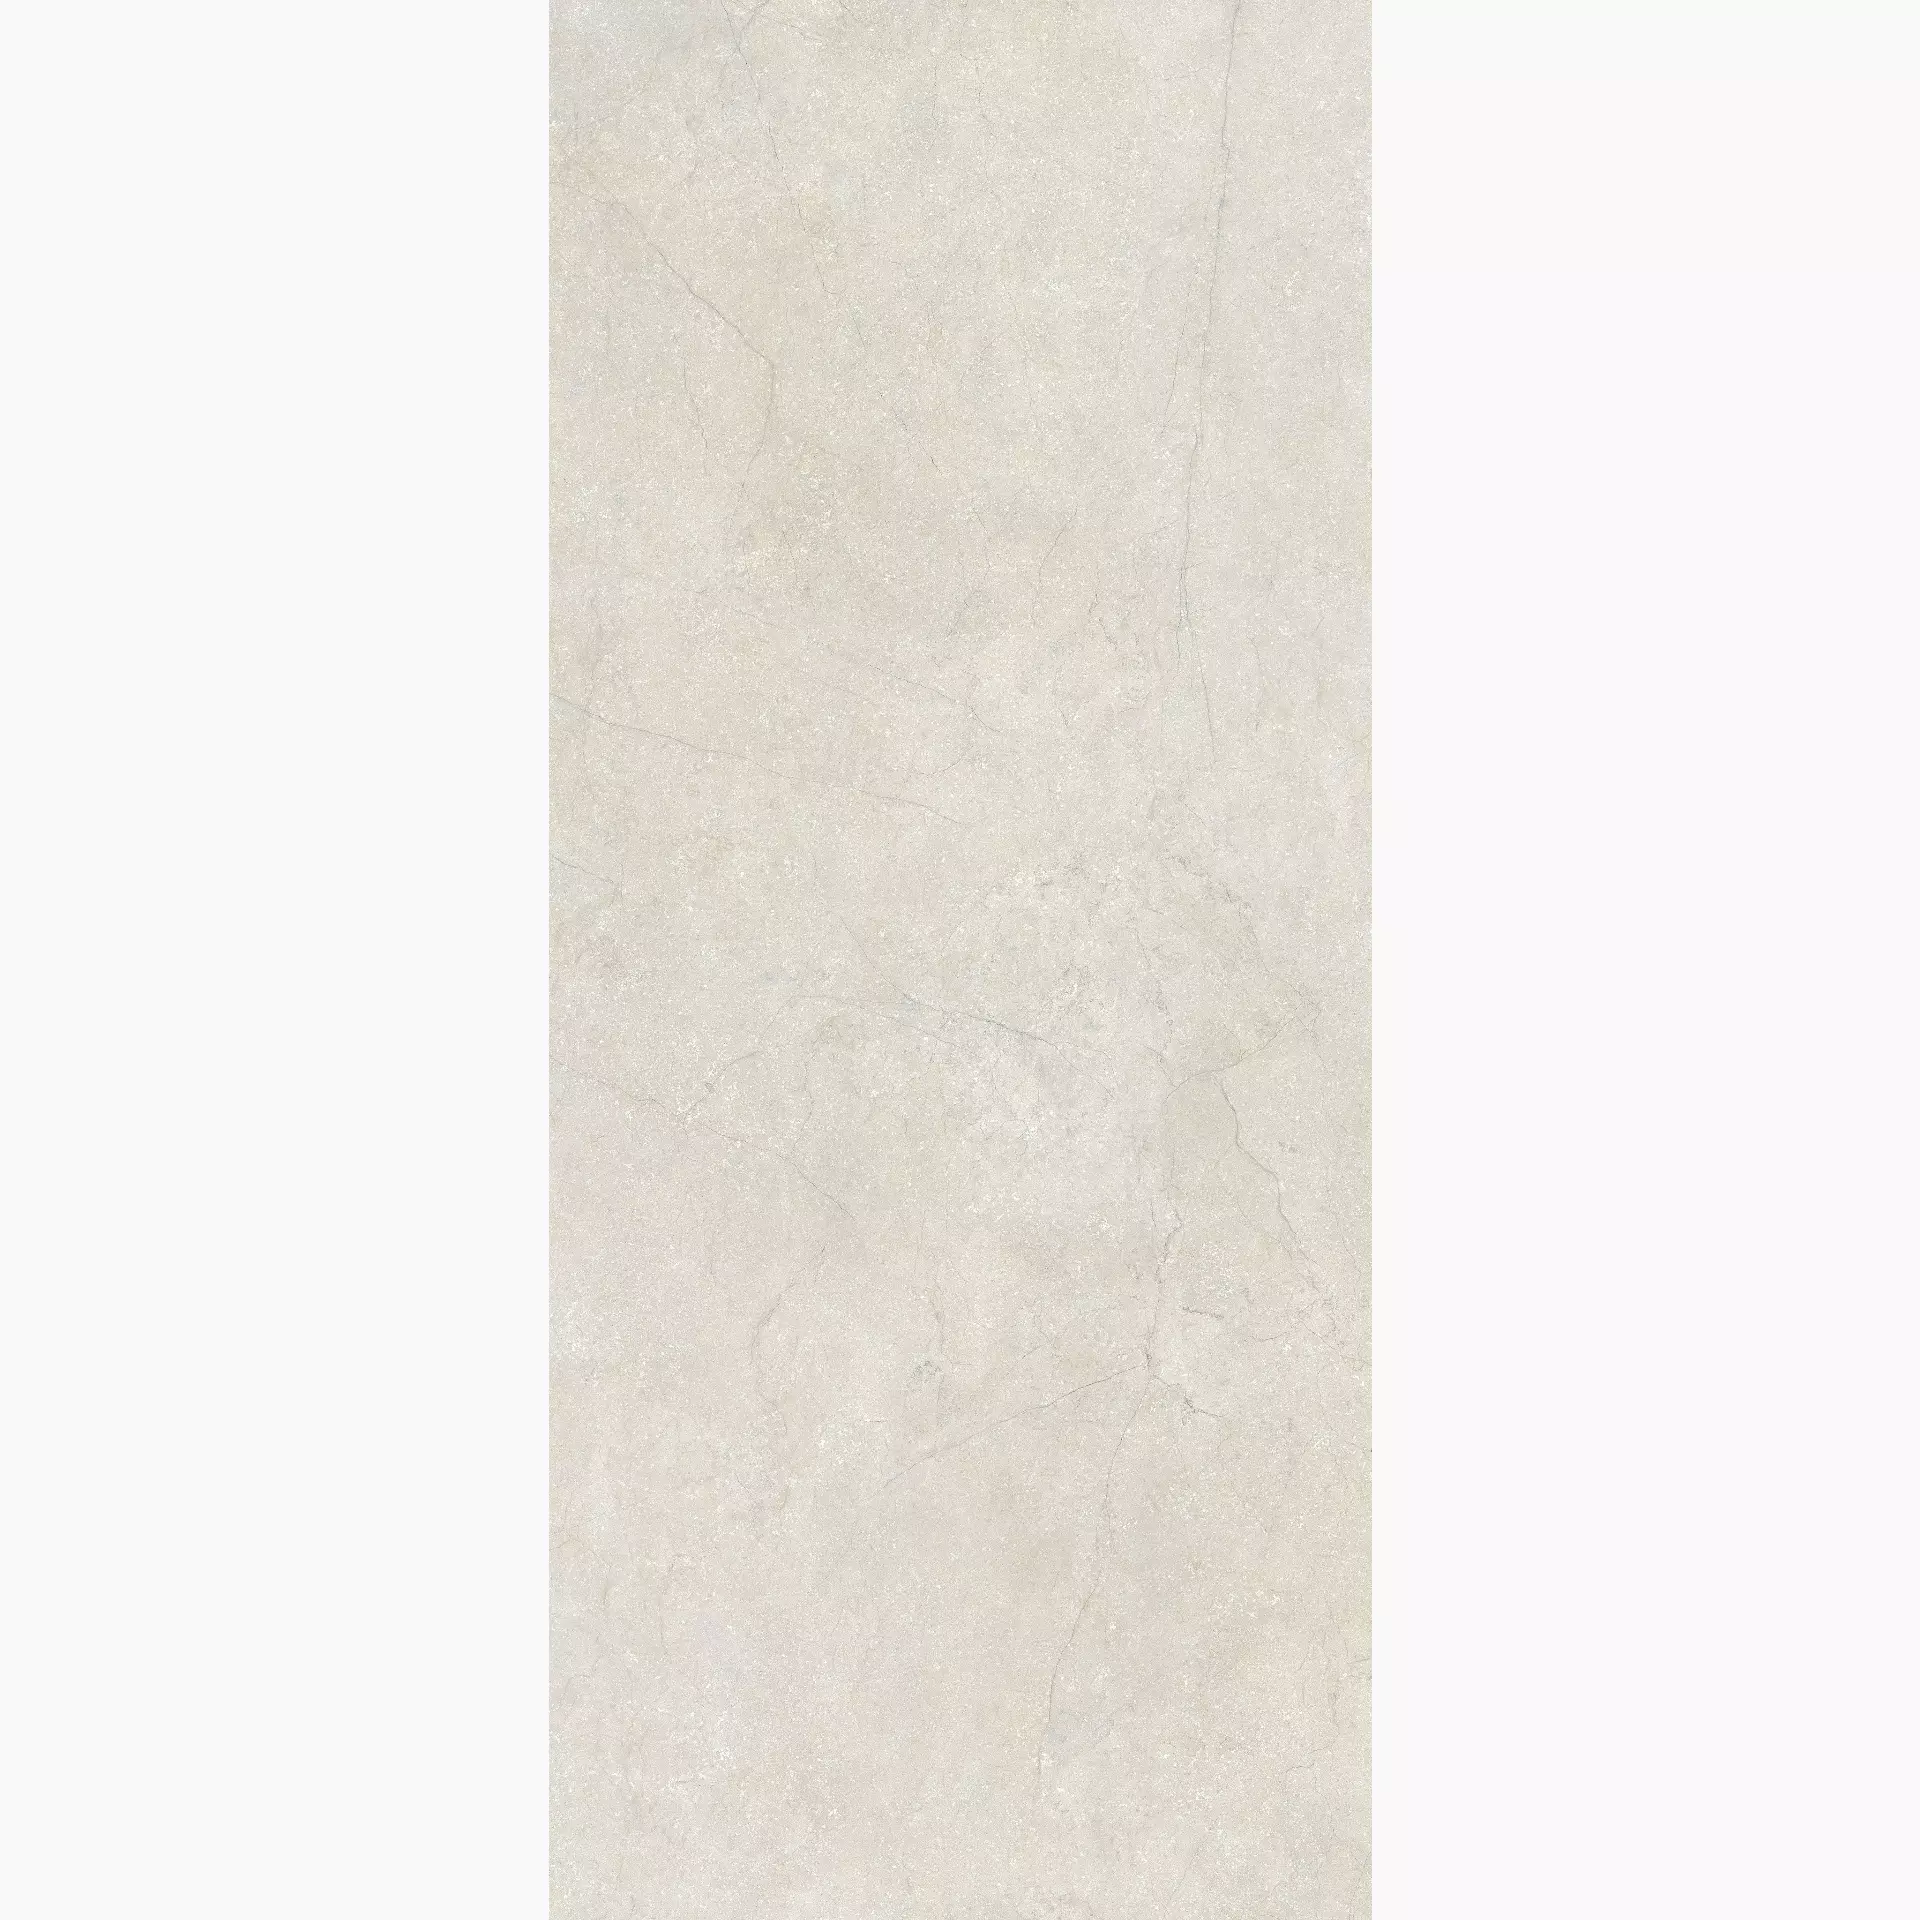 Florim Stone Life Cotton Naturale – Matt Cotton 778961 matt natur 120x280cm rektifiziert 6mm